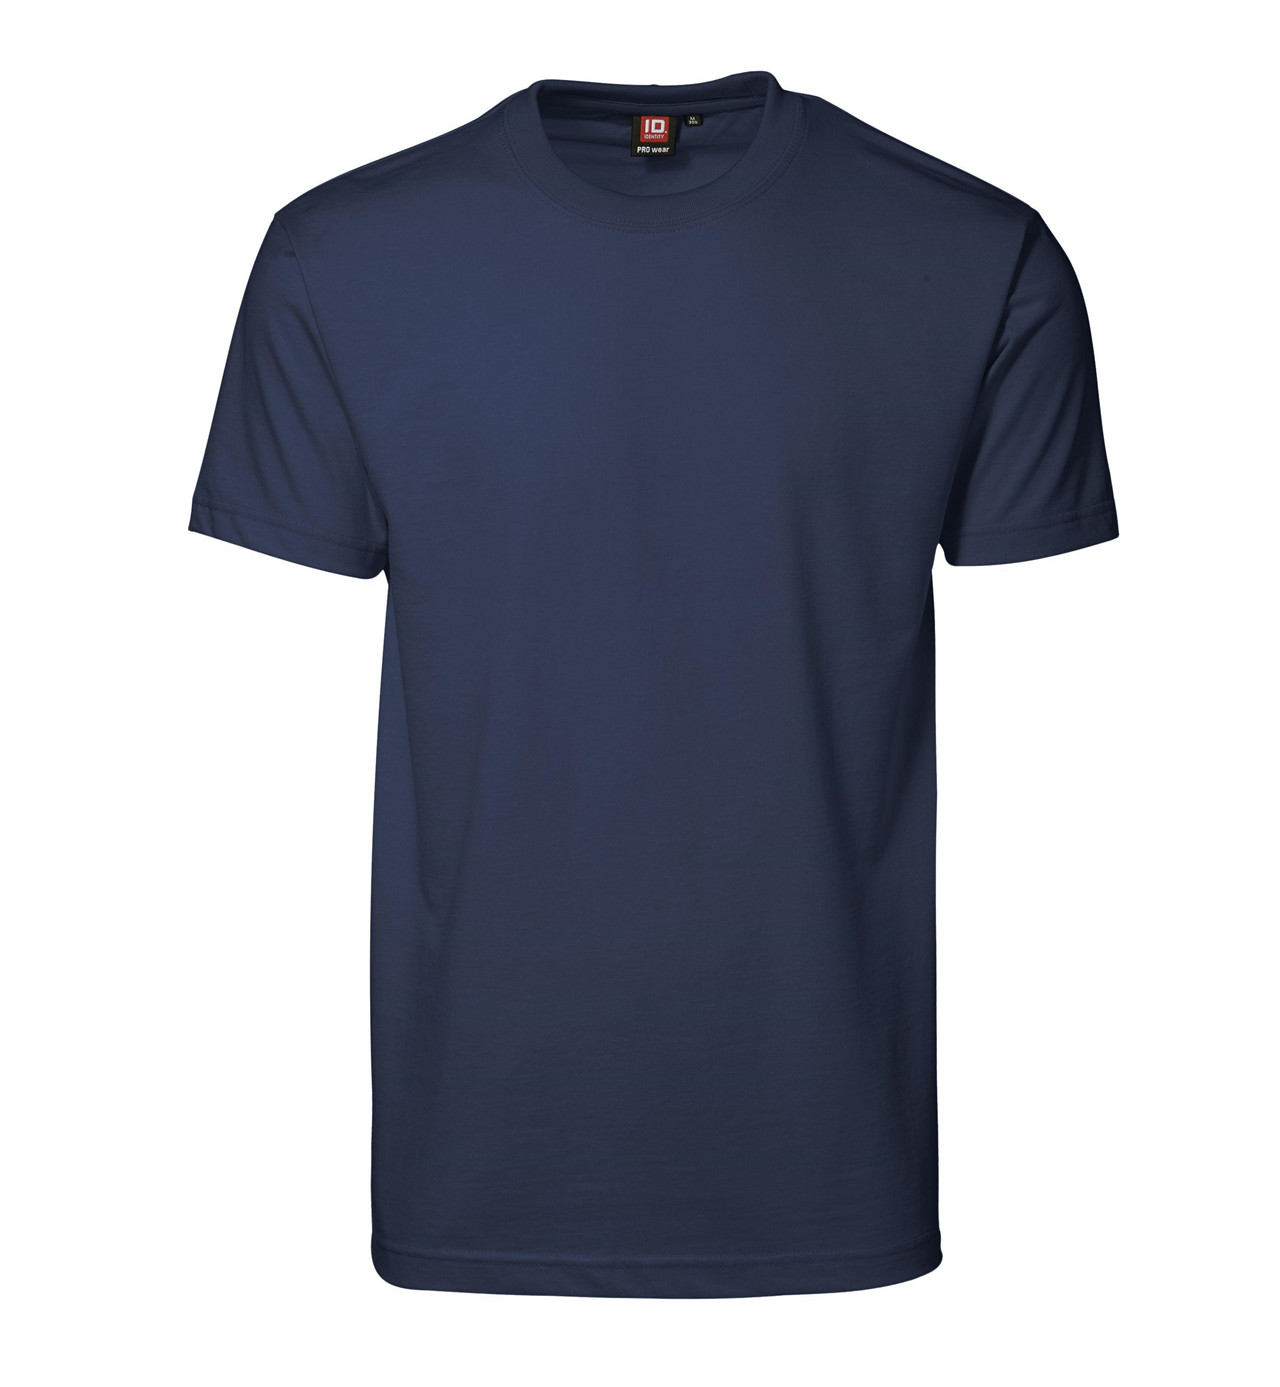 ID PRO Wear T-shirt til Herre (Navy, XS)